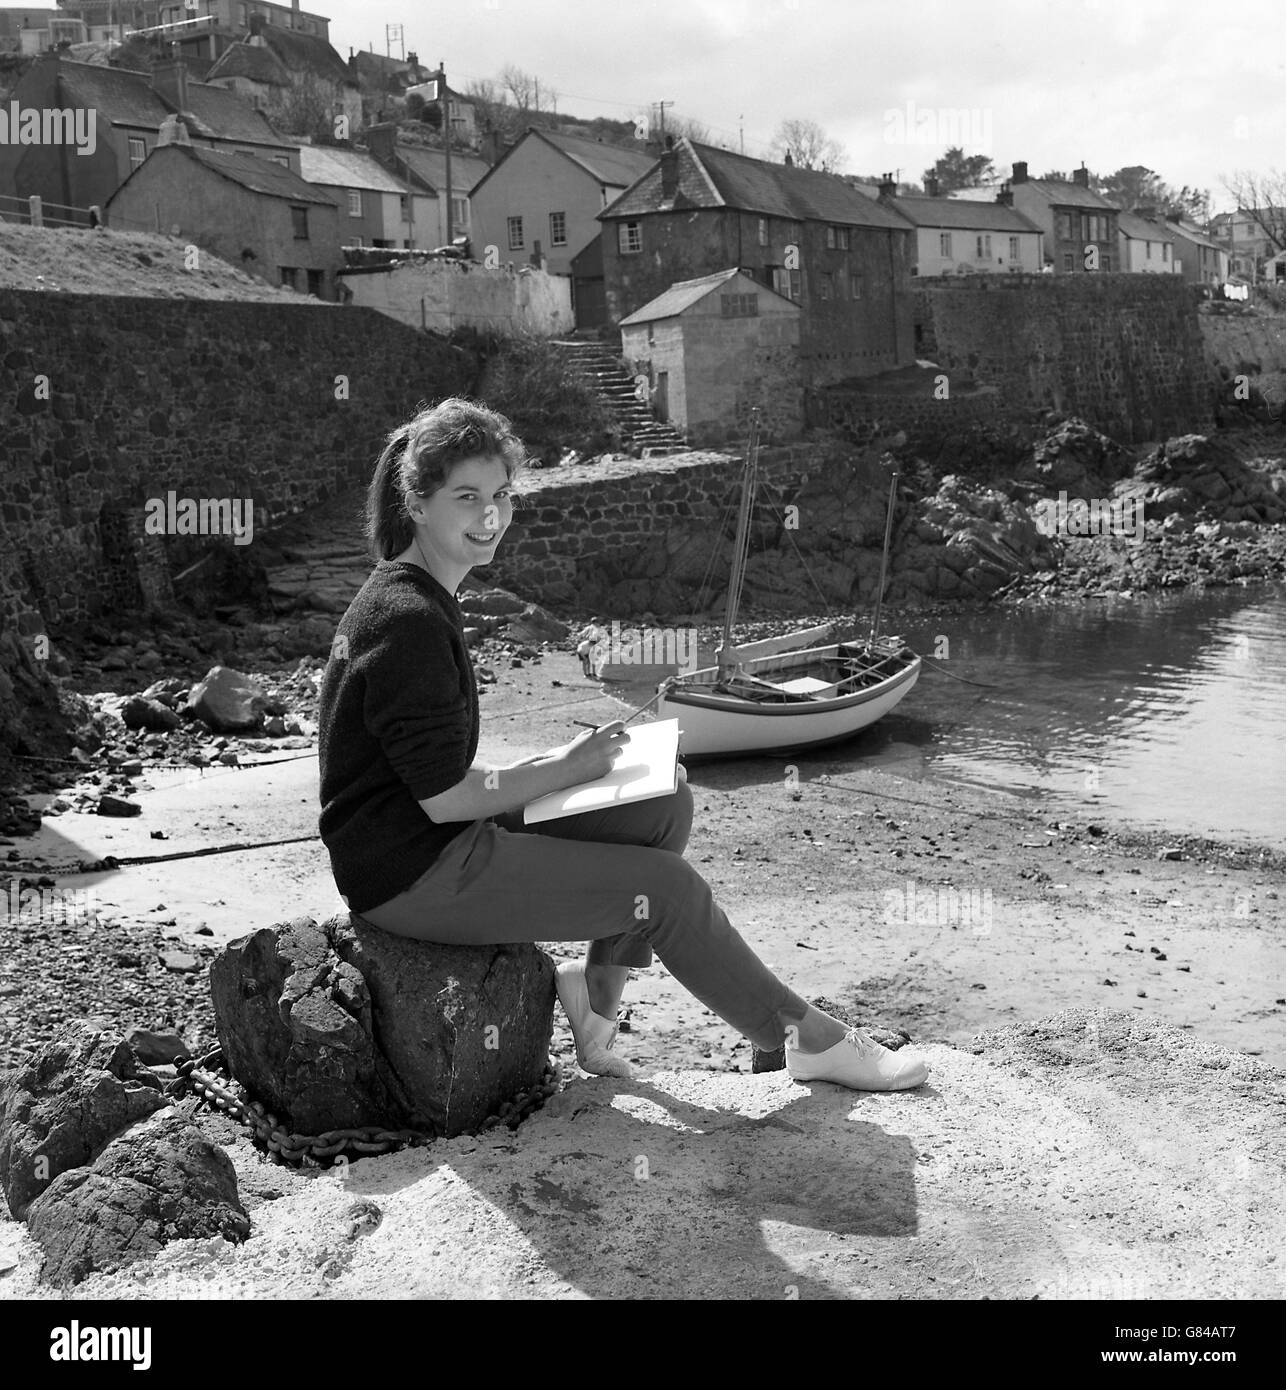 Barbara Woolhouse, 18, skizziert Coverack Harbour in Cornwall. Derzeit studiert sie Französisch, Spanisch und Latein für ihr A-Niveau und hofft, eine mehrsprachige Sekretärin zu werden. Stockfoto